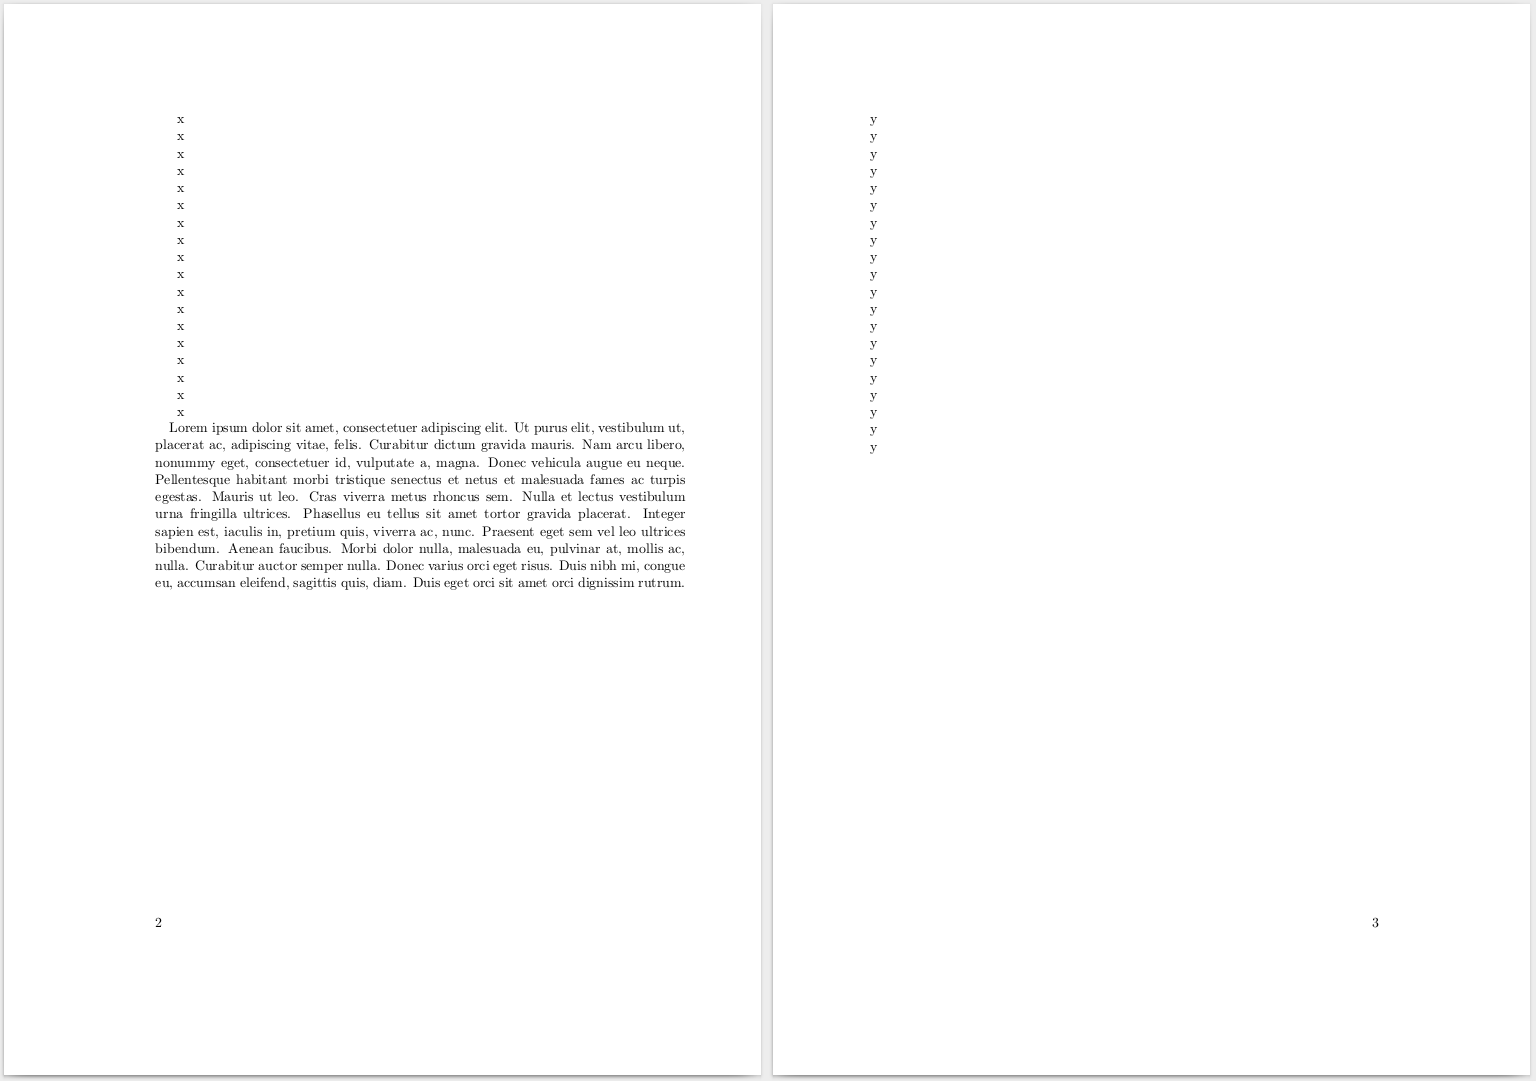 Seiten 2 und 3 des mit pdflatex Version 3.14159265-2.6-1.40.16 generierten PDFs.